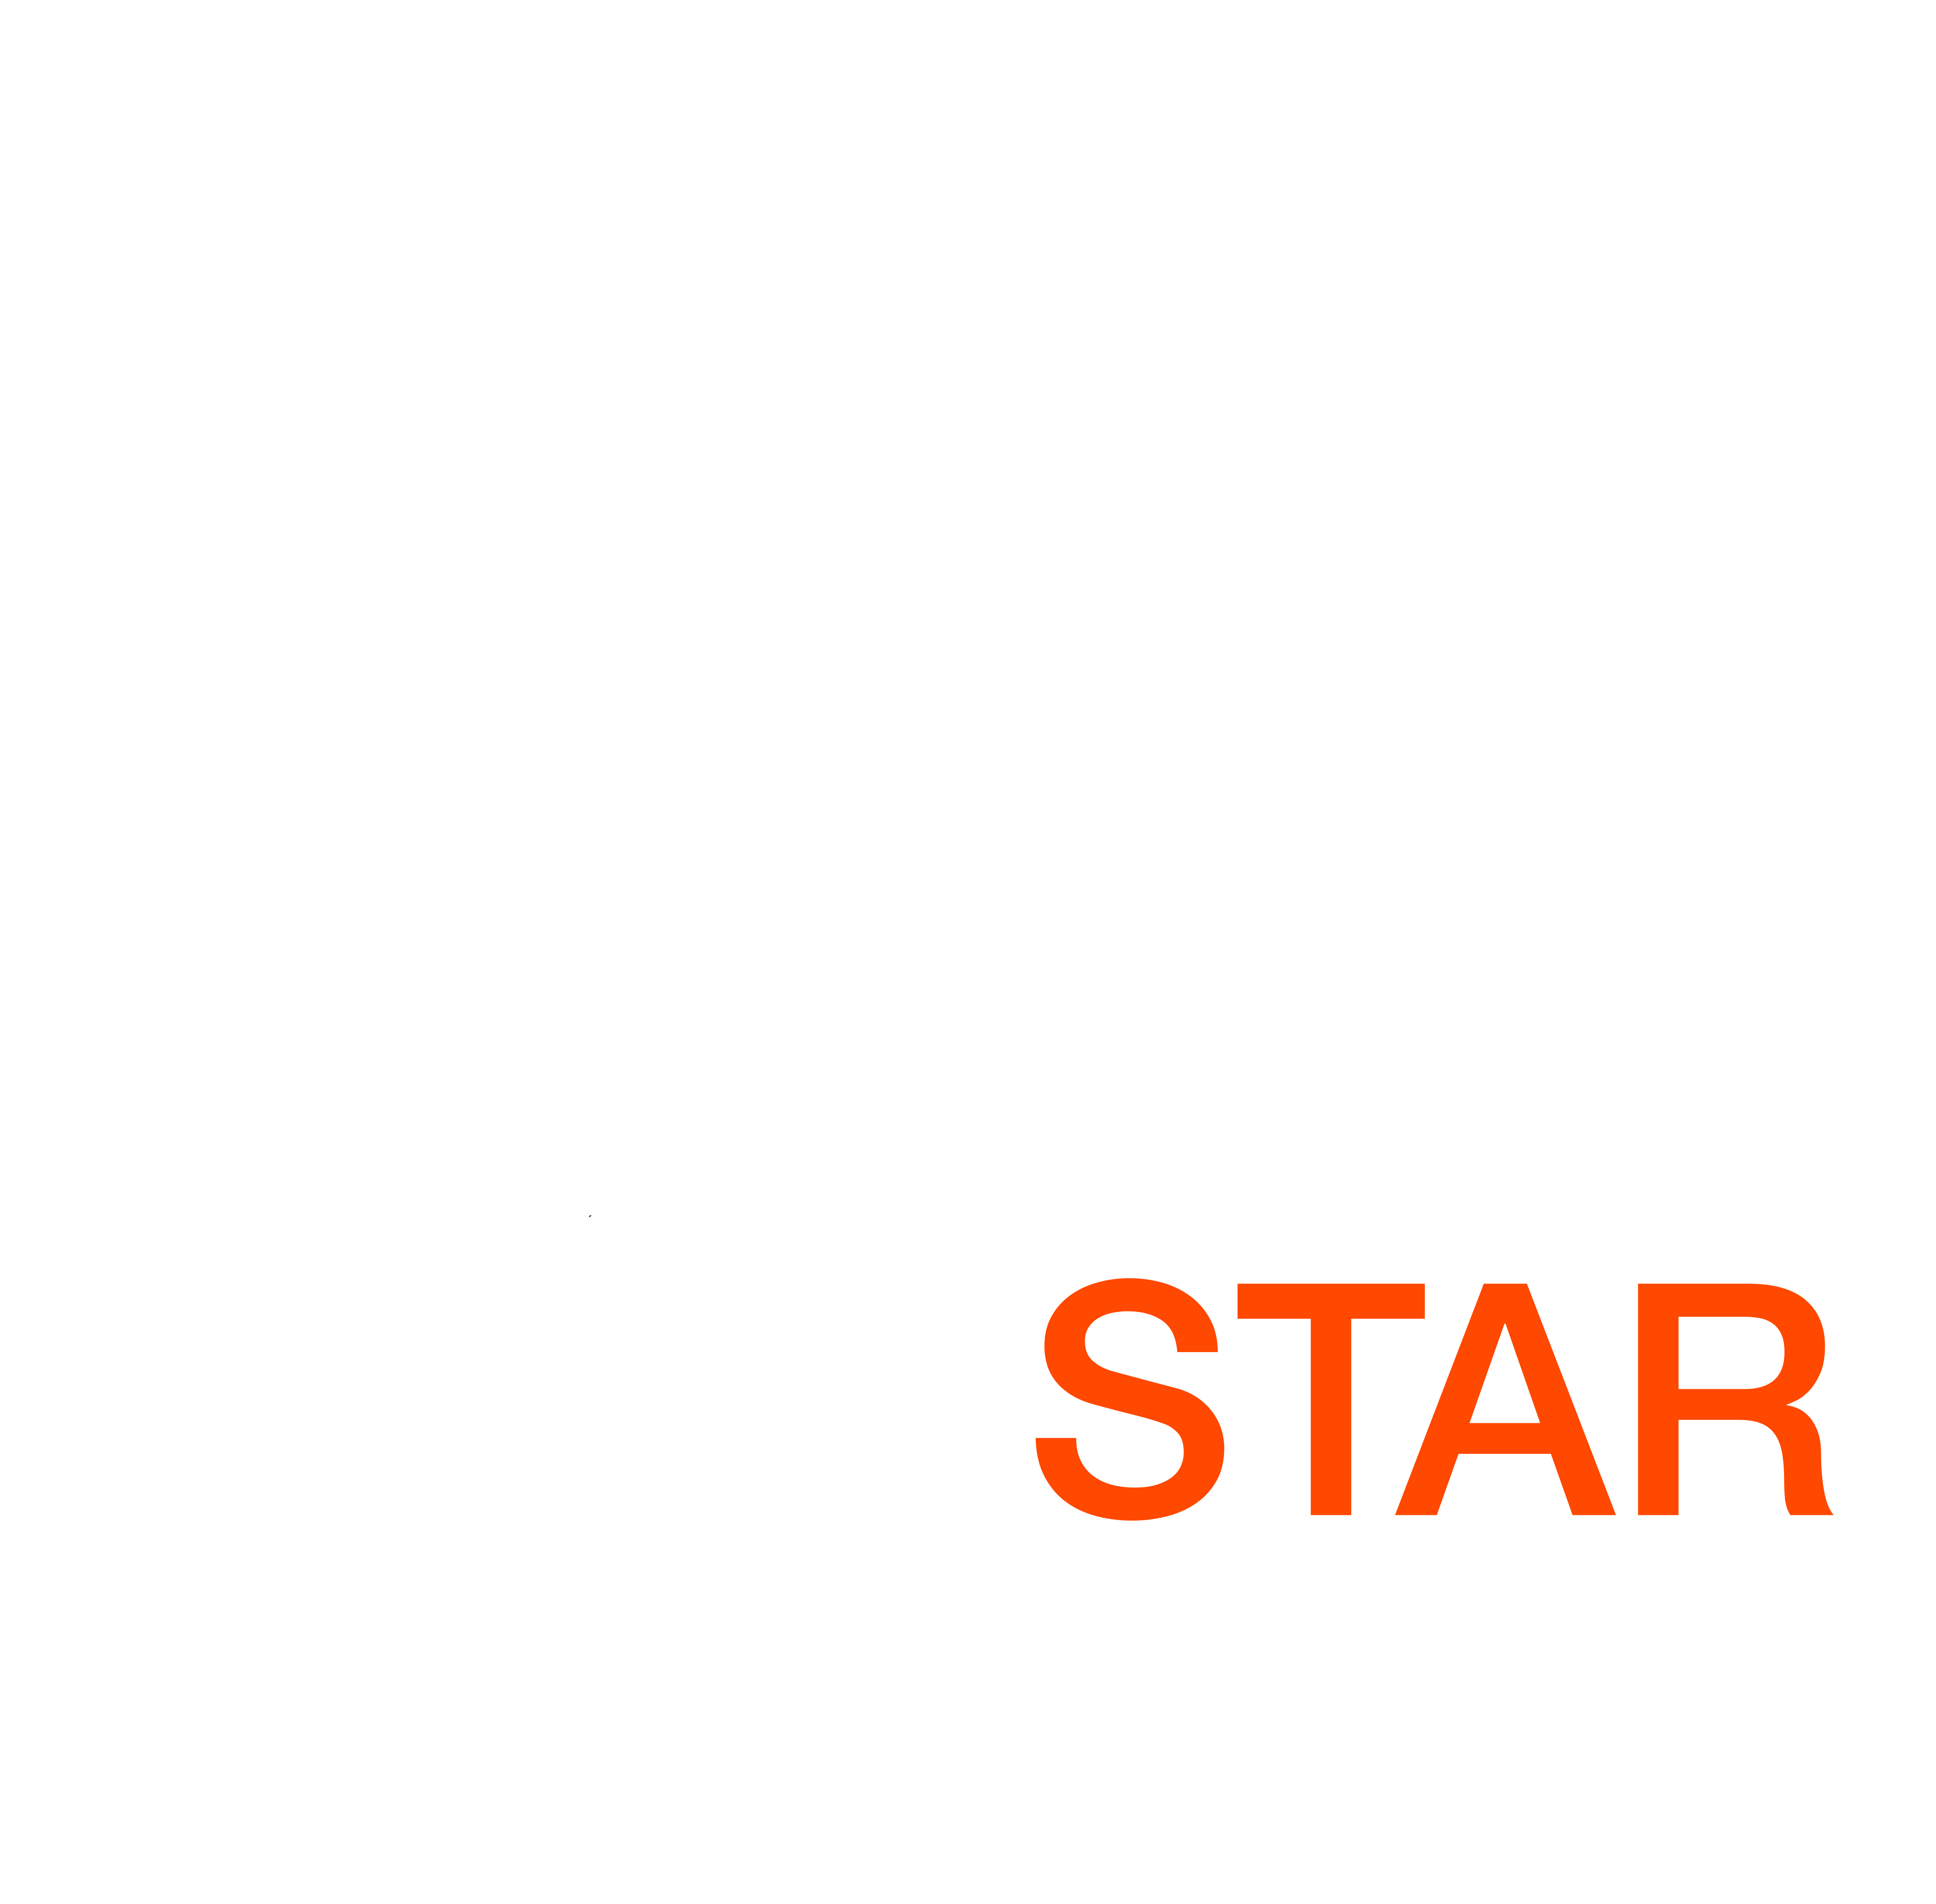 Rockstardevelopers – Architekten der Digitalen Zukunft